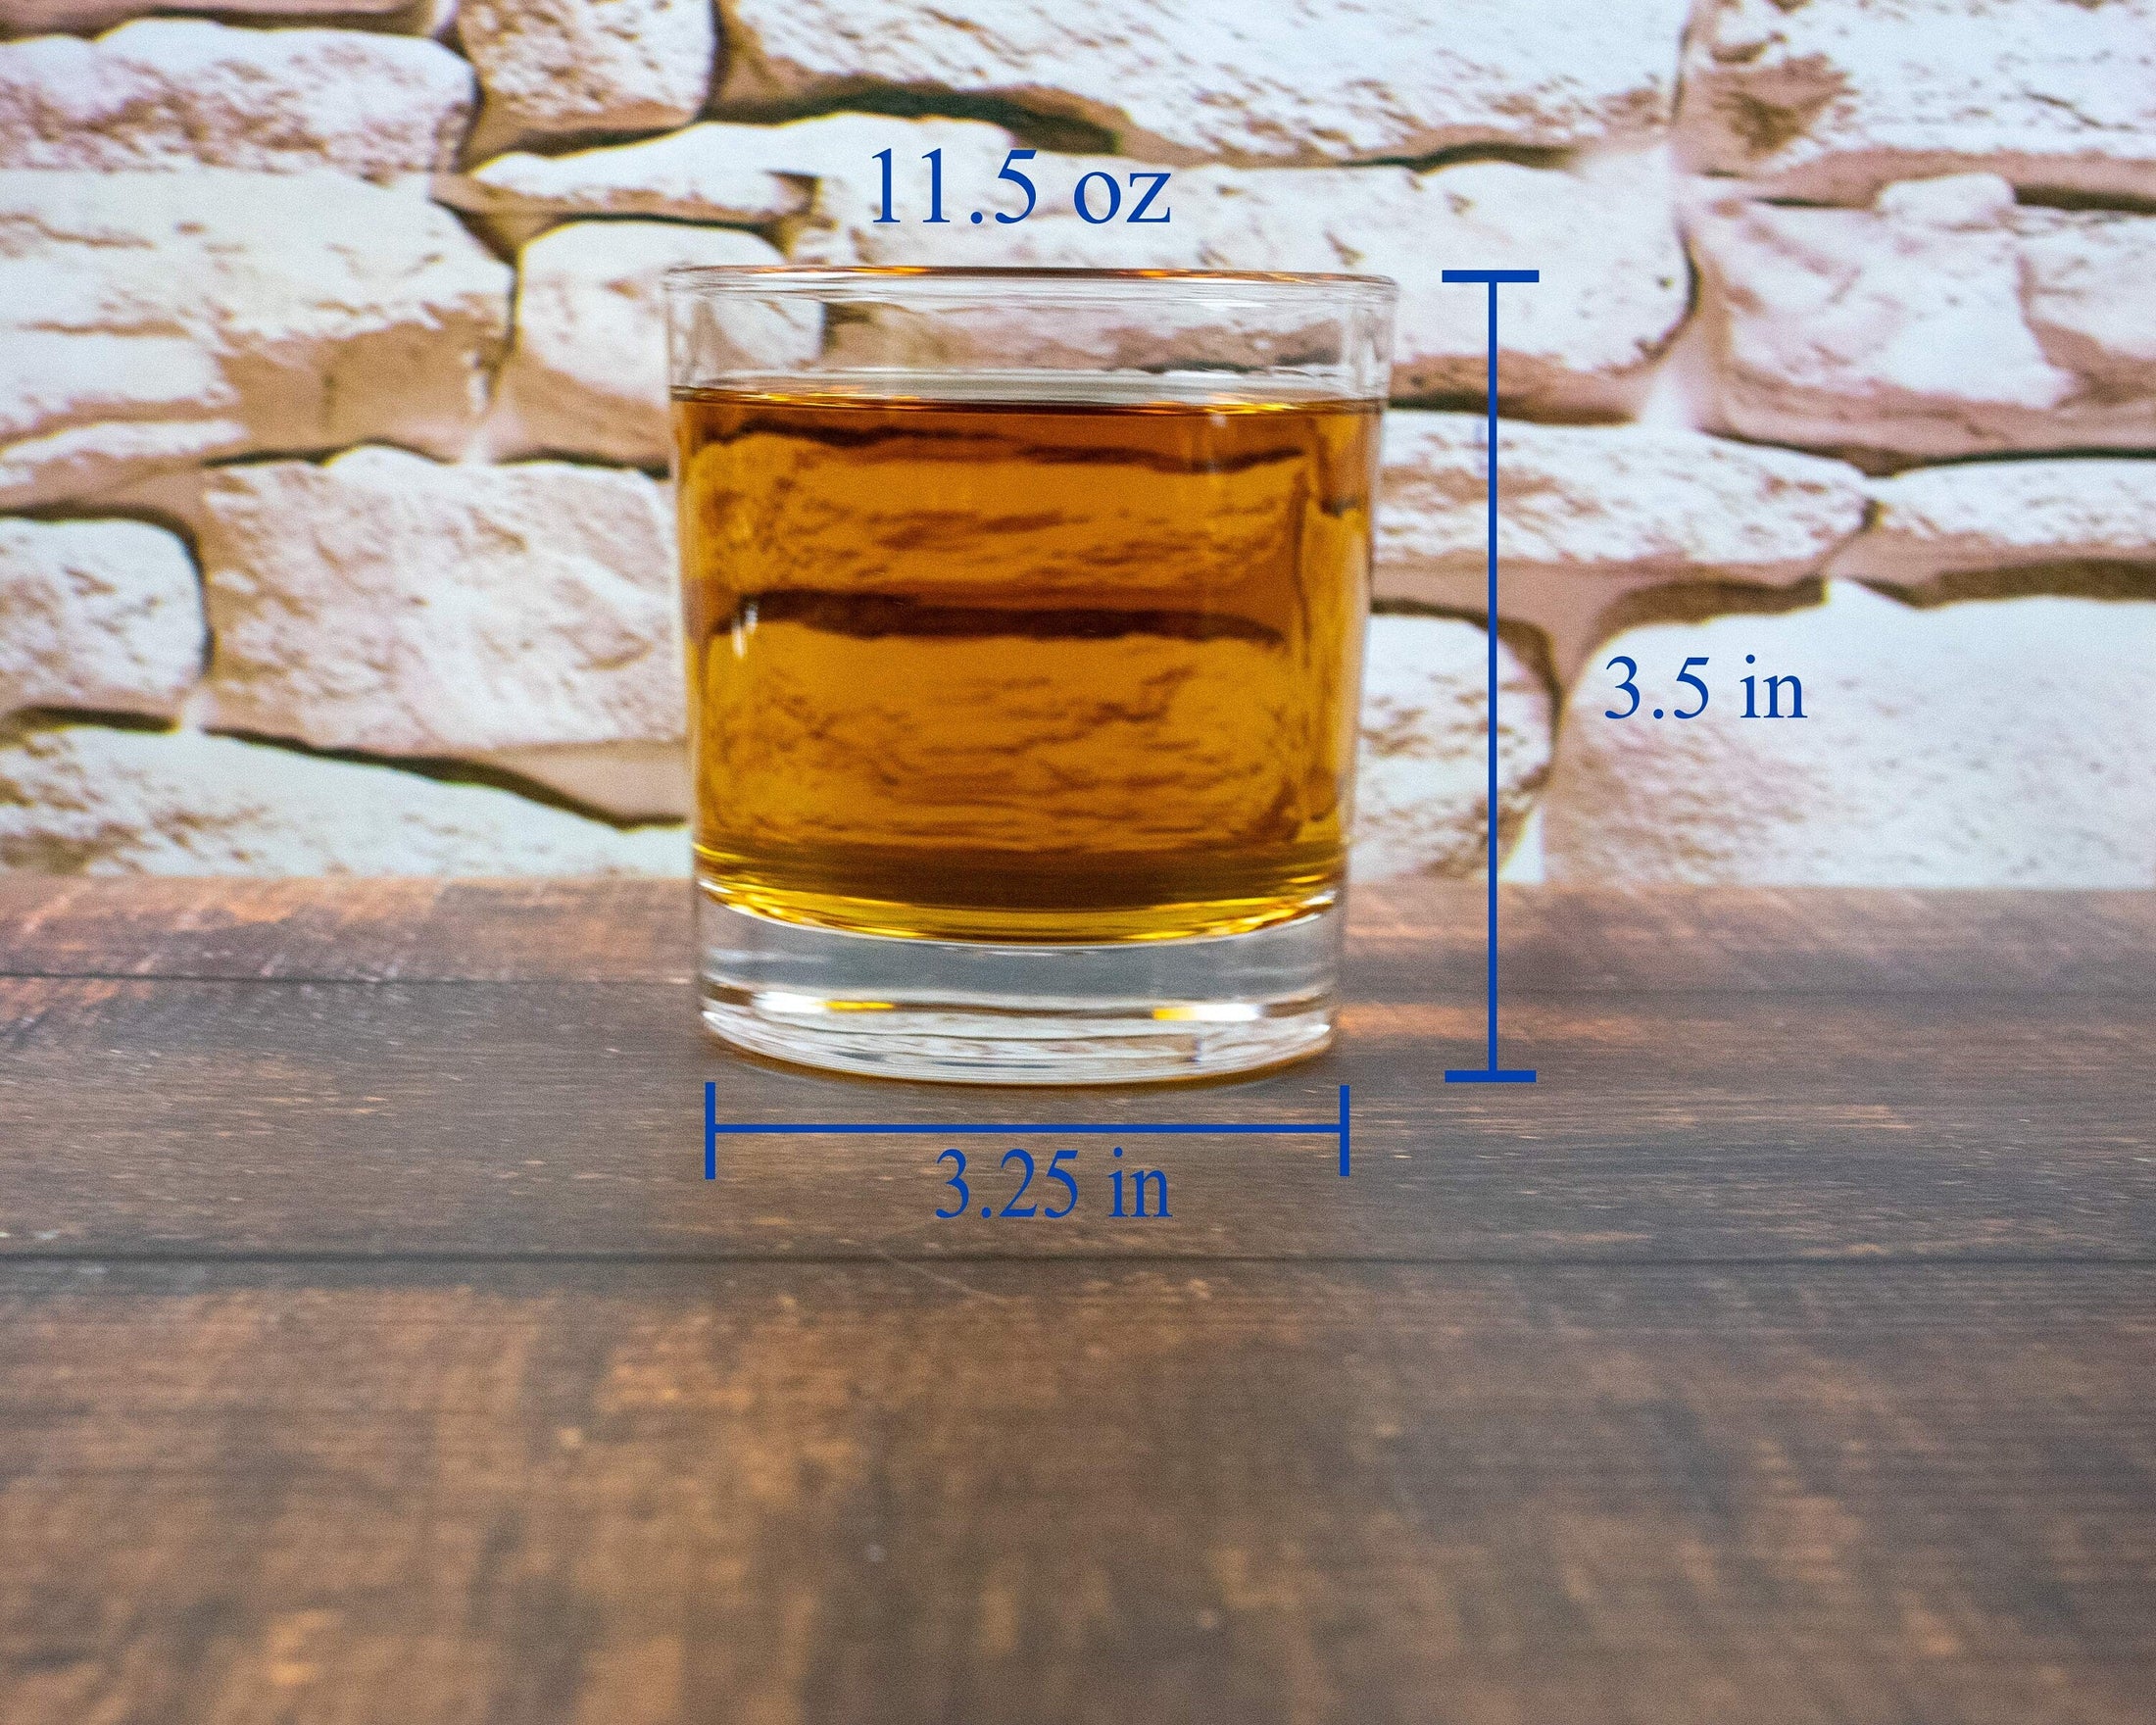 Pharmacist Inspired Engraved Whiskey Glass